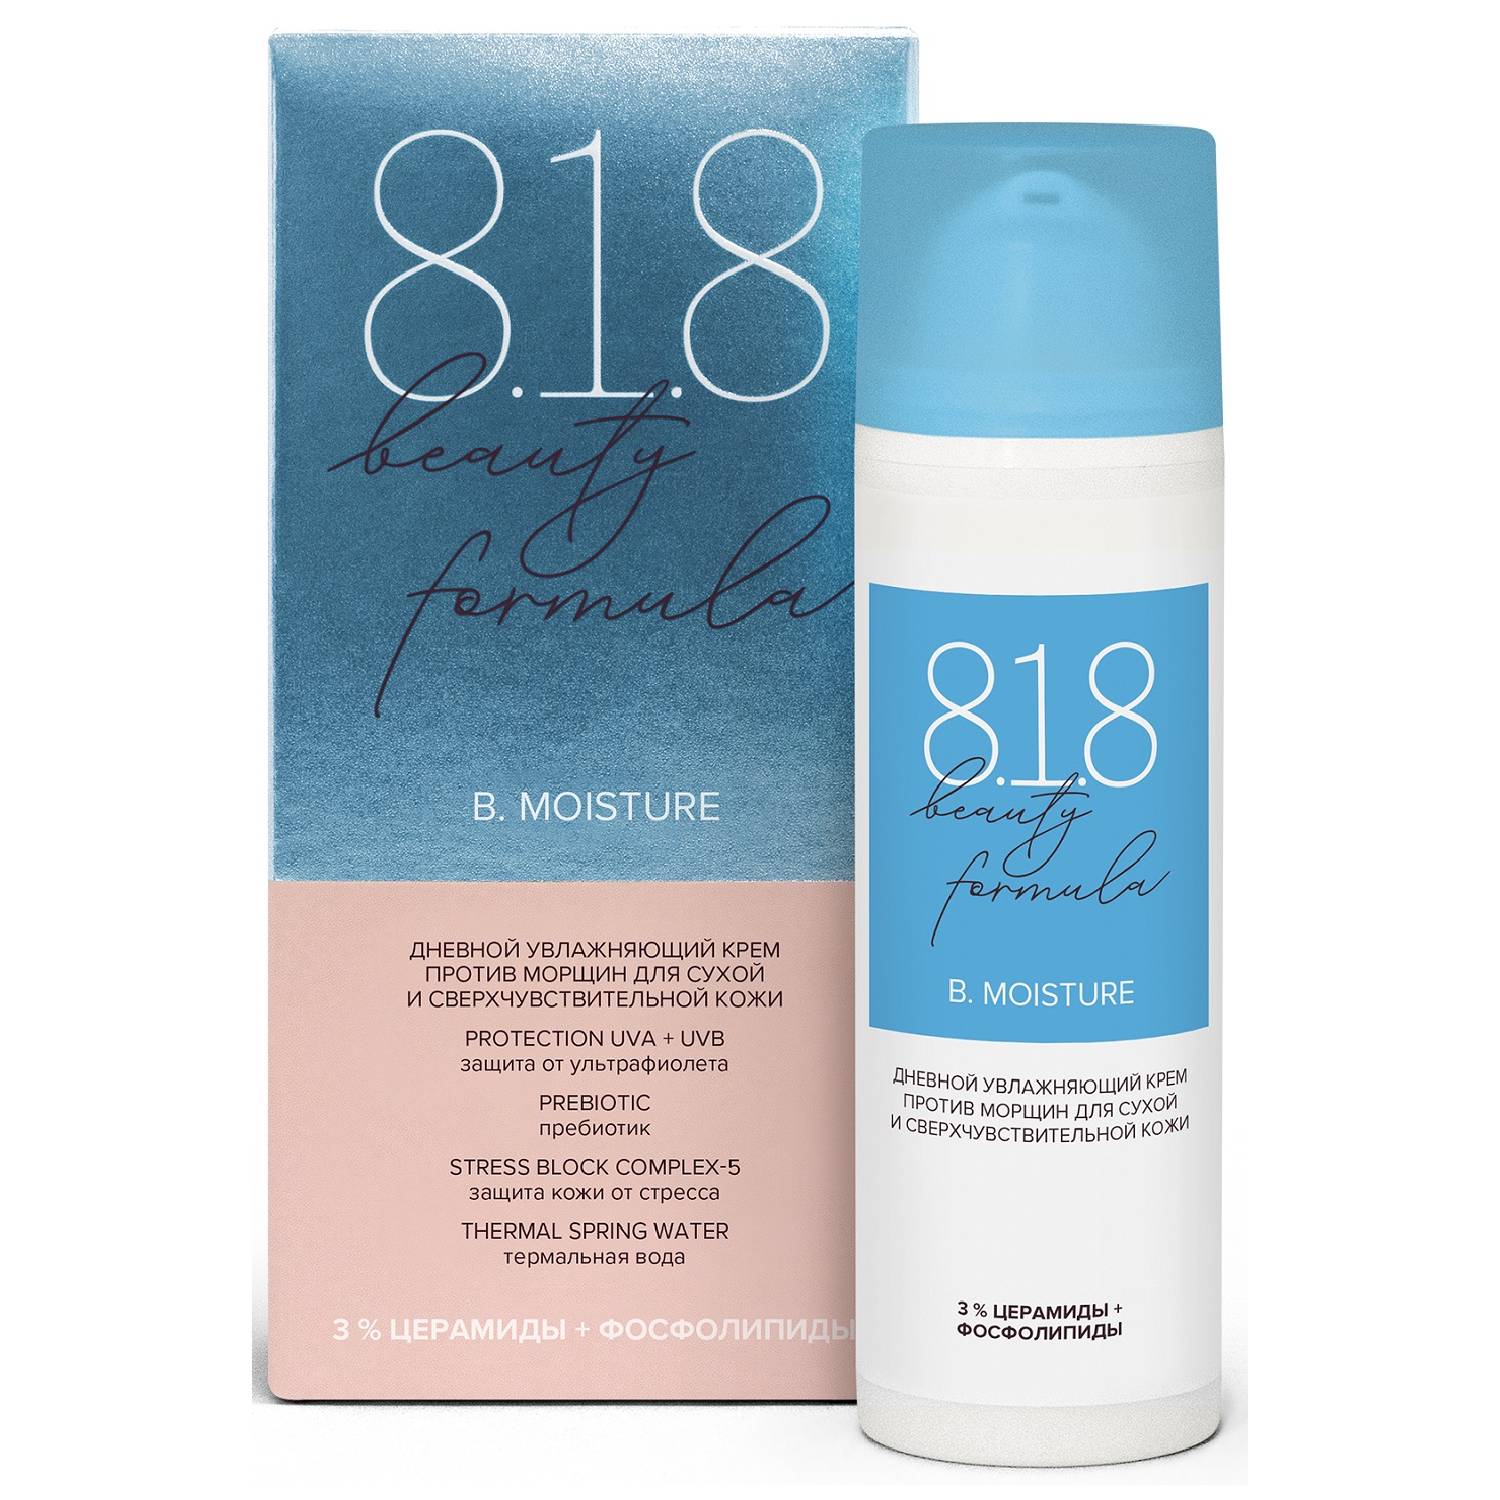 8.1.8 Beauty Formula Дневной увлажняющий крем против морщин для сухой и сверхчувствительной кожи SPF 10, 50 мл (8.1.8 Beauty Formula, B. Moisture)